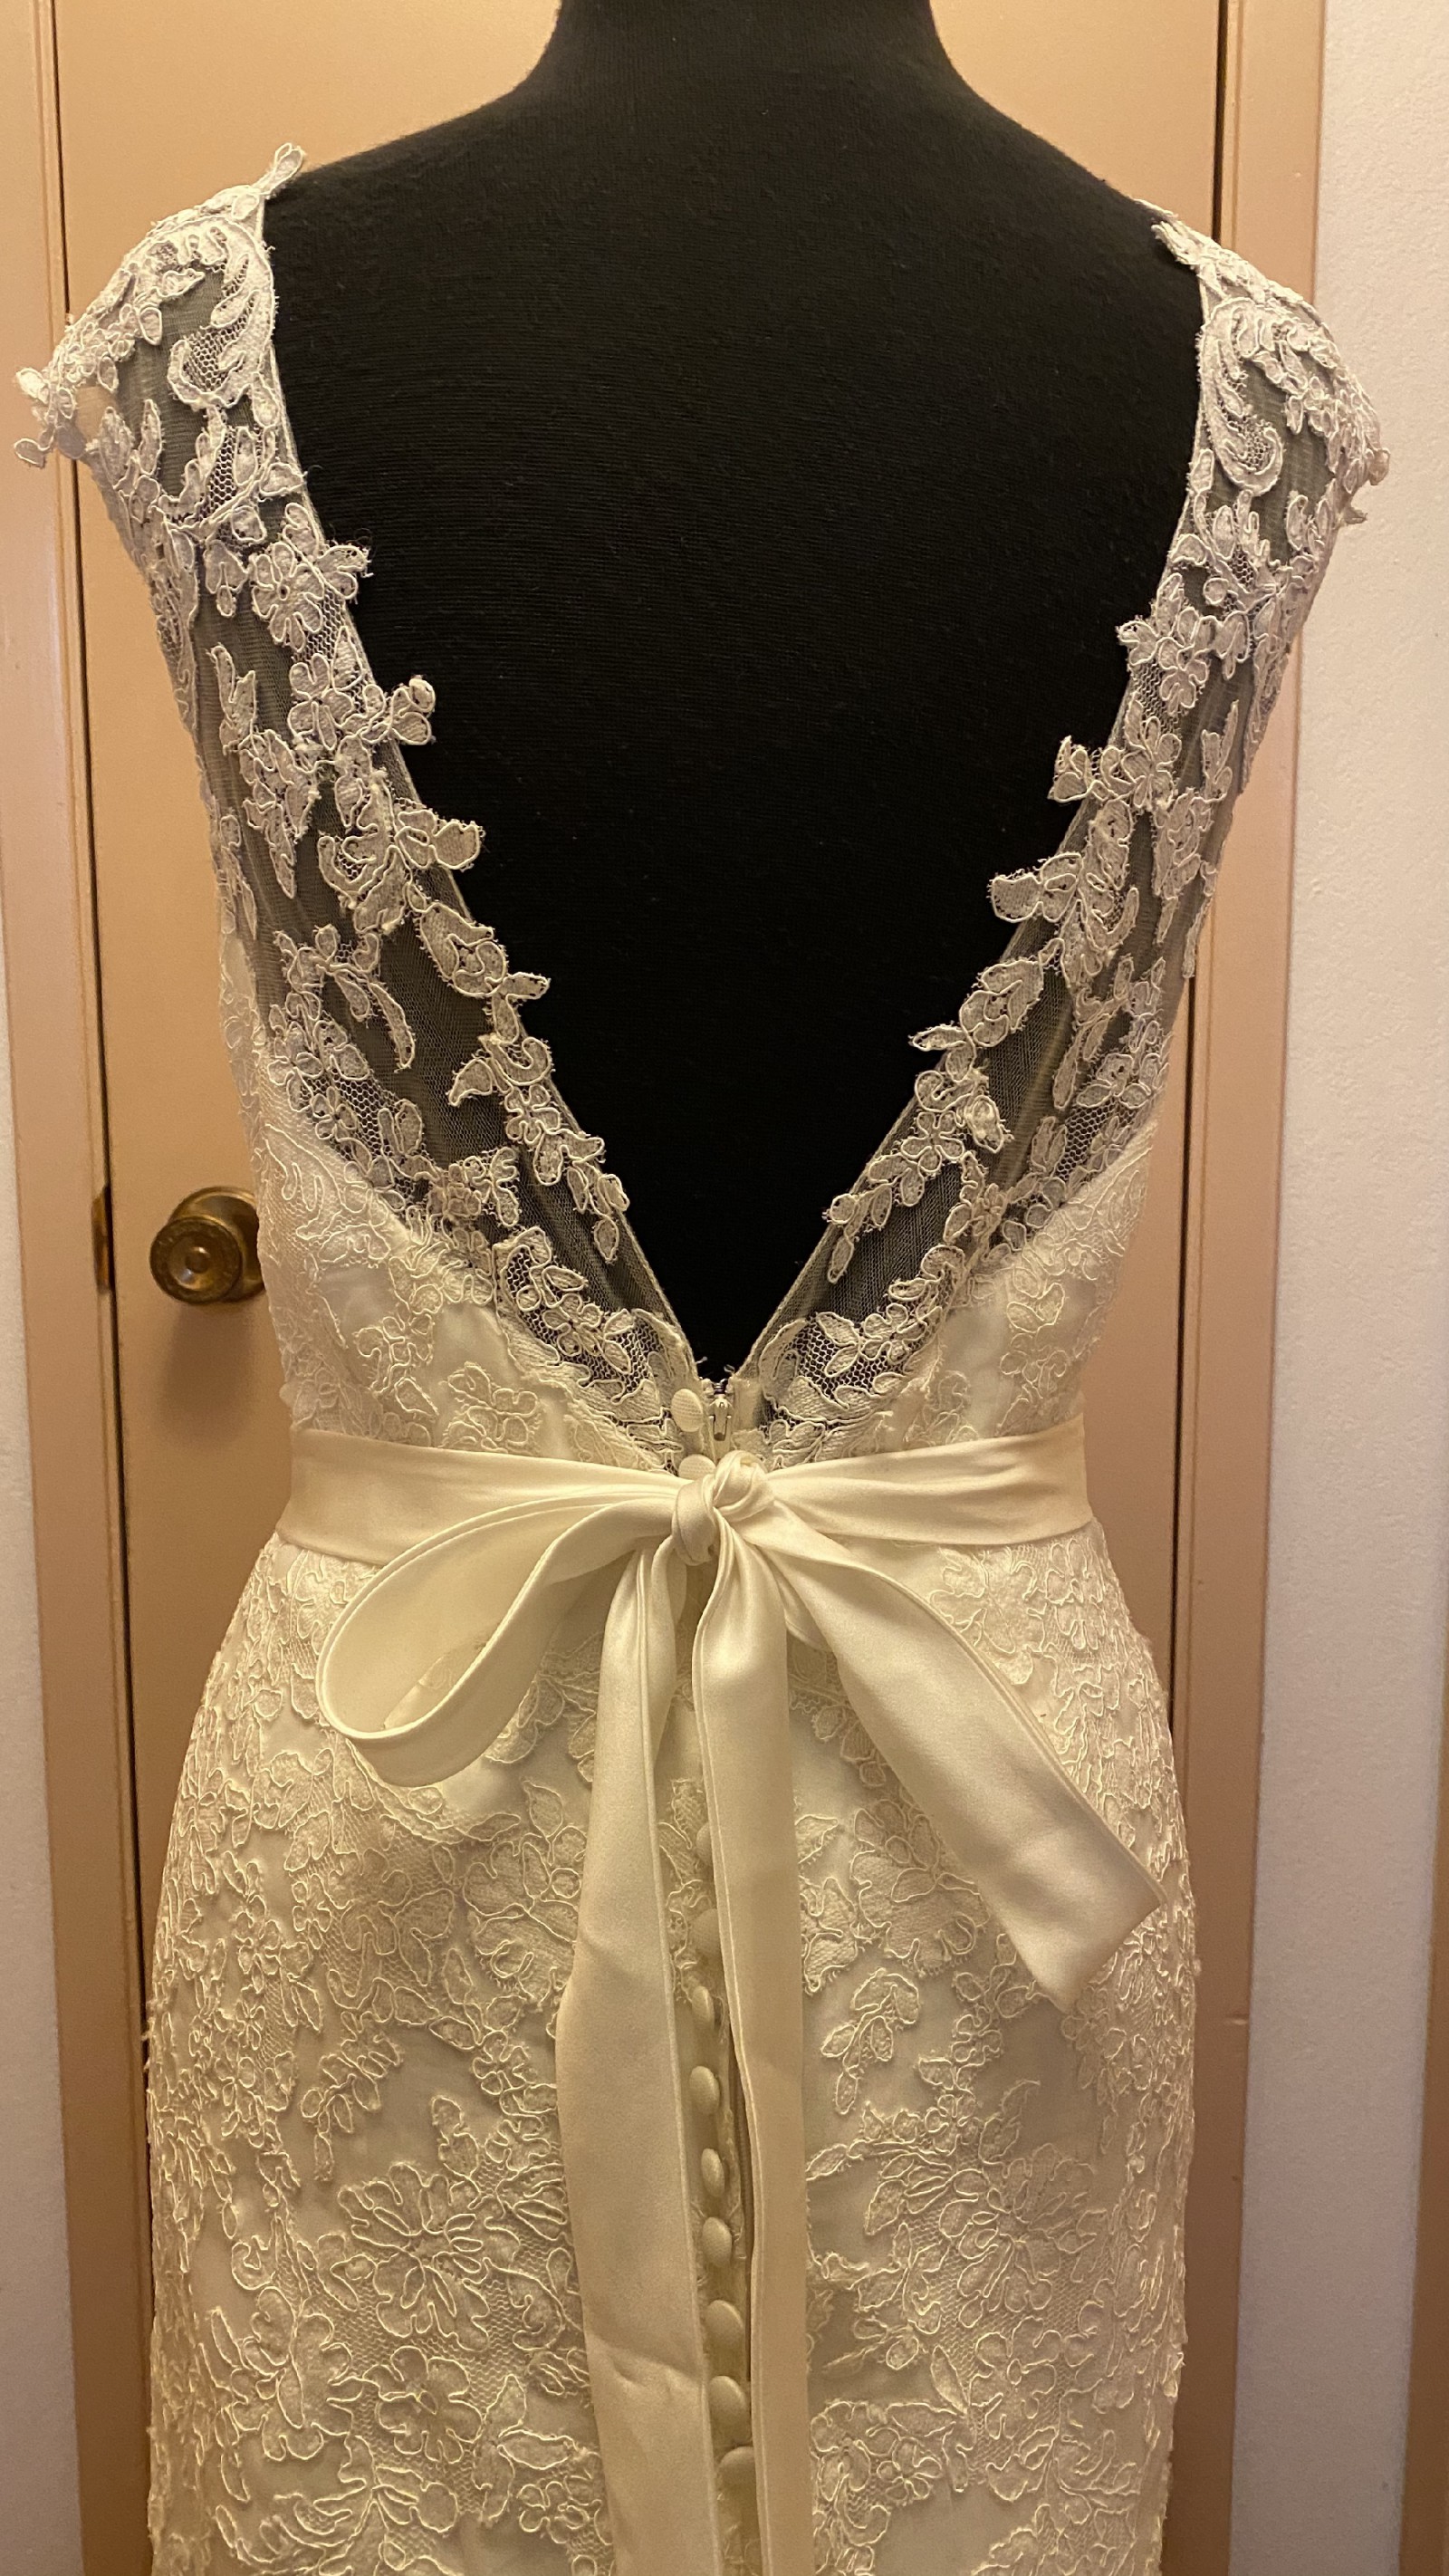 Venus Bridal Ve 8277 Sample Wedding Dress Save 84% - Stillwhite